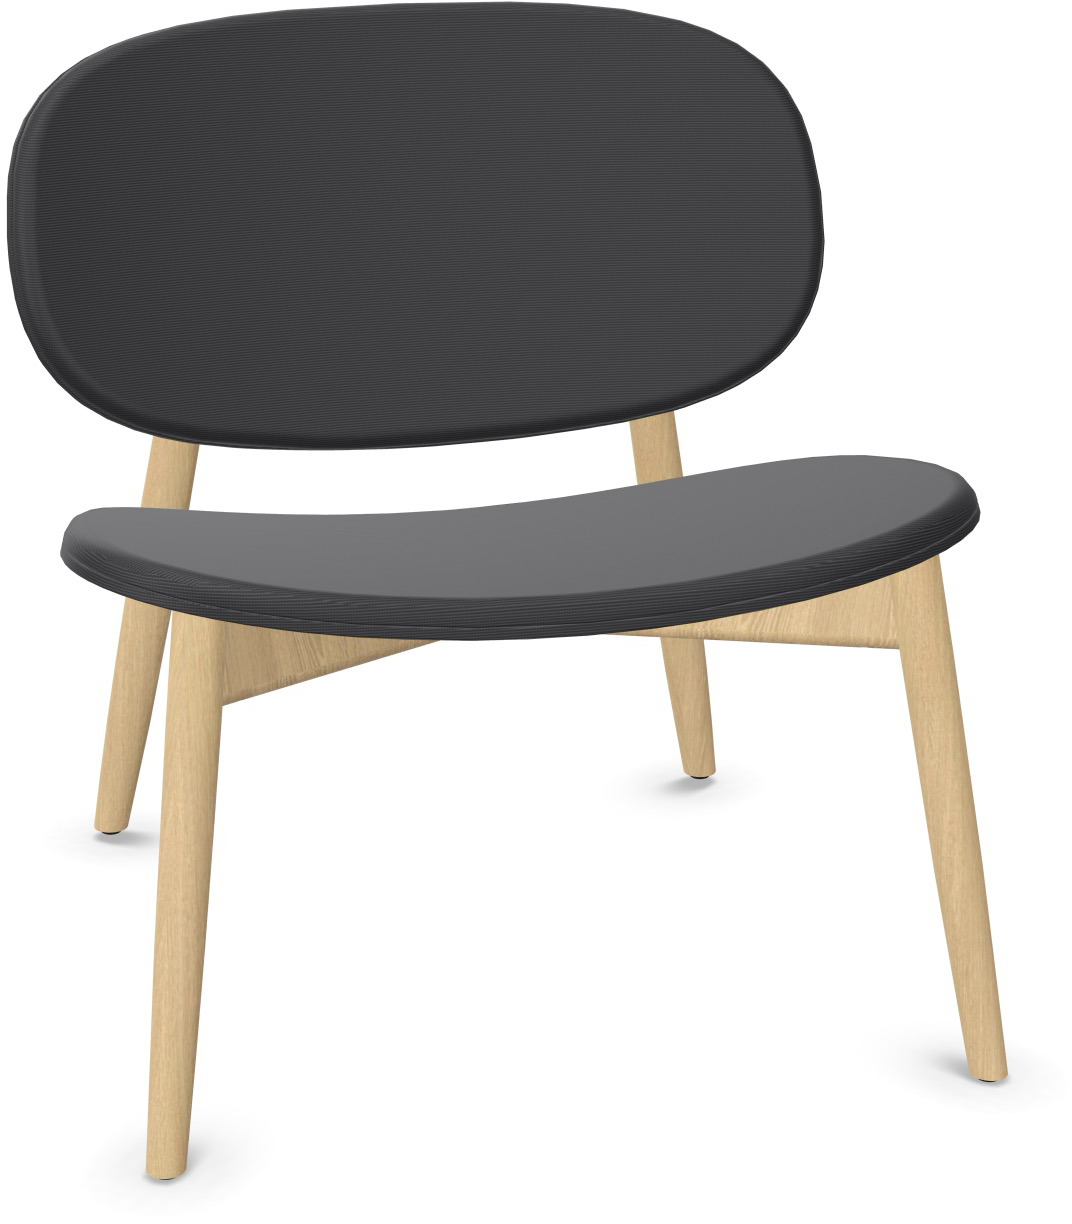 HARMO Relaxsessel in Anthrazit präsentiert im Onlineshop von KAQTU Design AG. Sessel ist von Infiniti Design